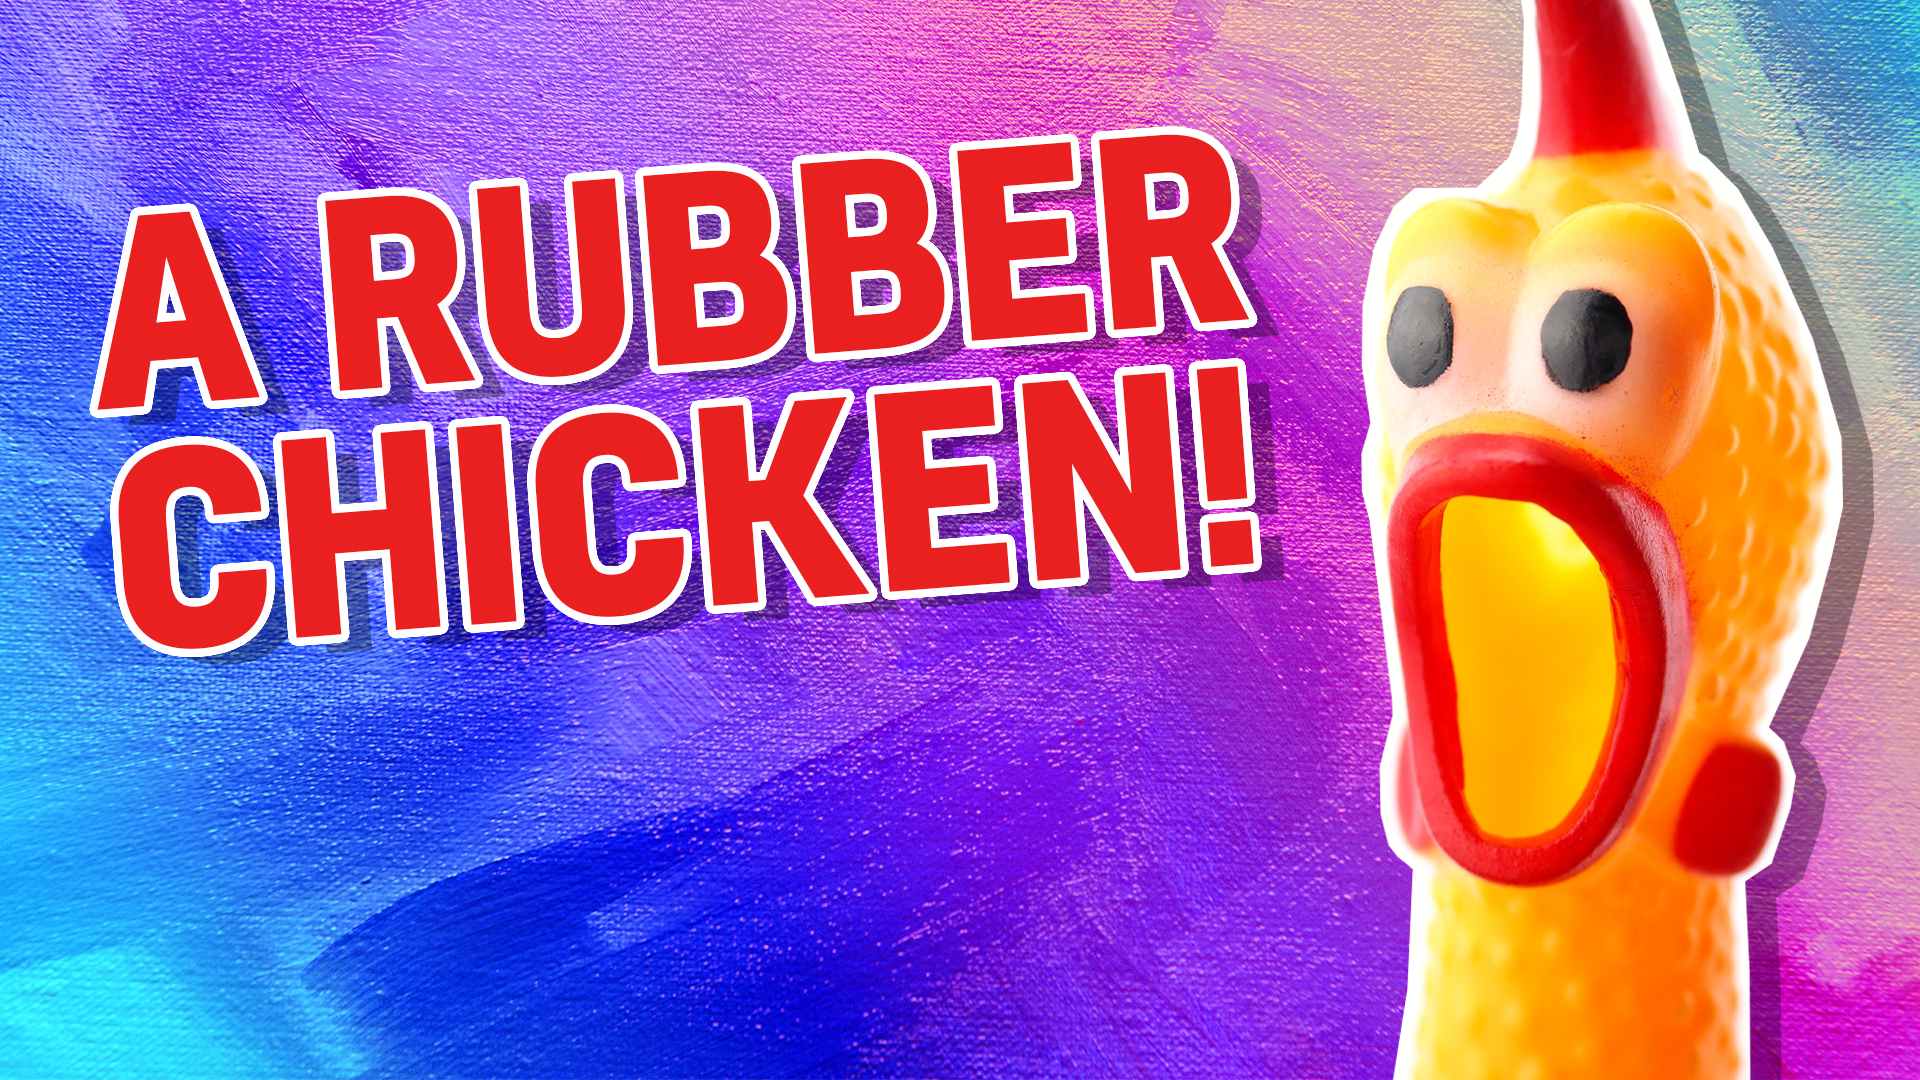 A rubber chicken